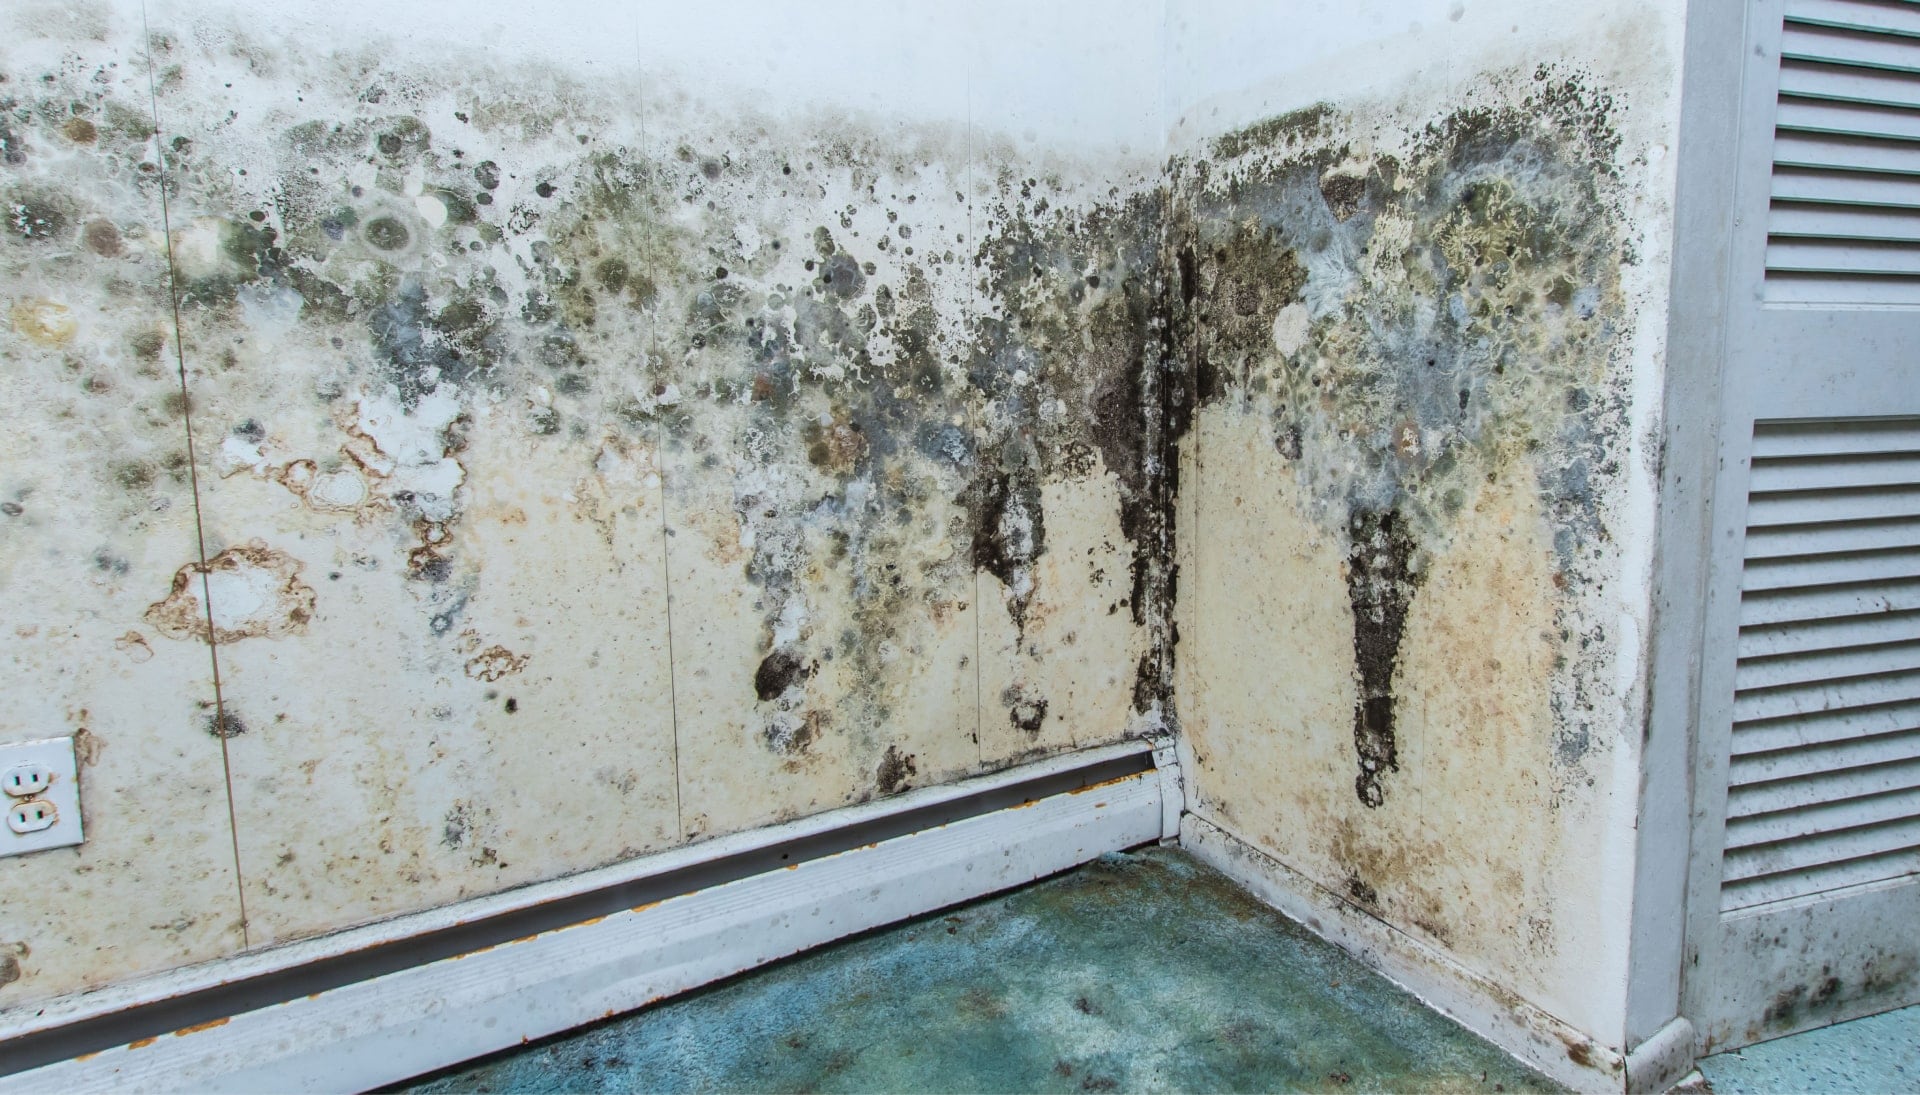 Mold-Damager-Odor-Control in Redondo Beach